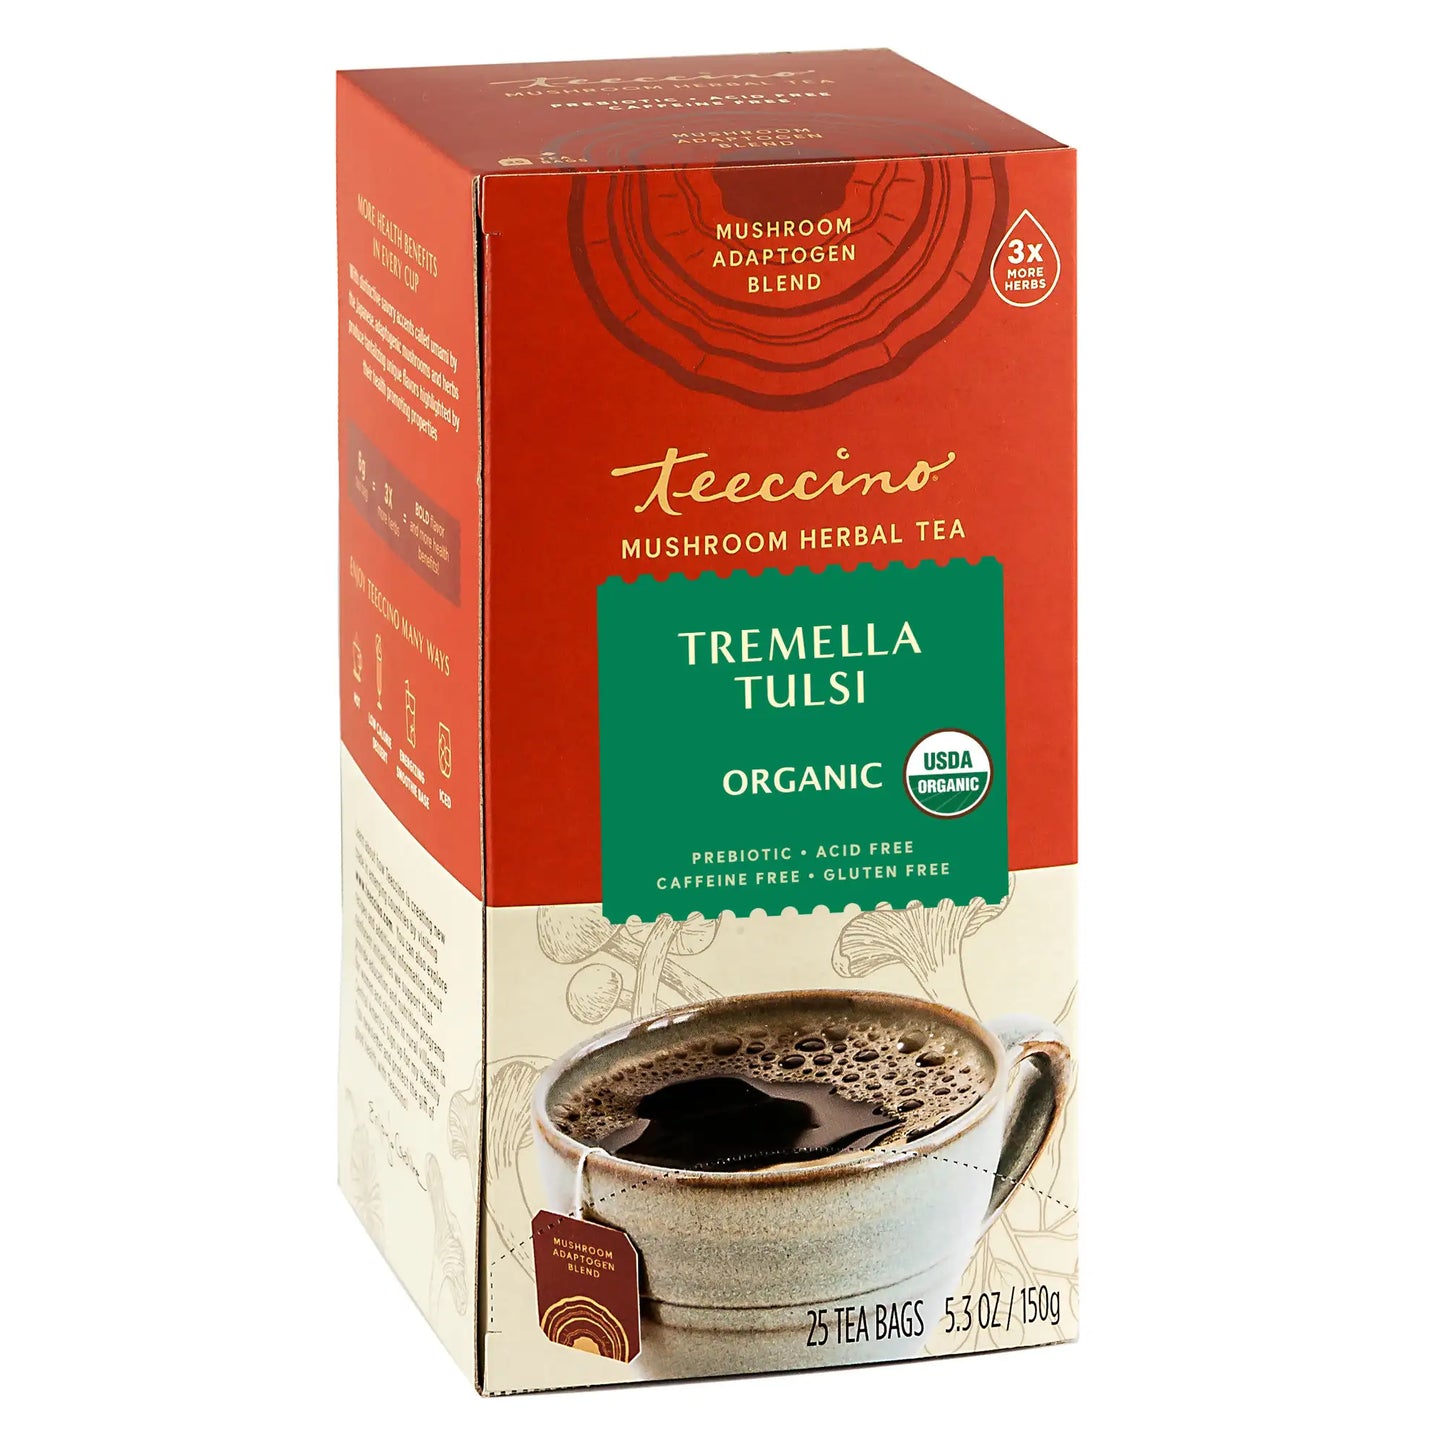 Tremella Tulsi Cardamom Mushroom Herbal Tea